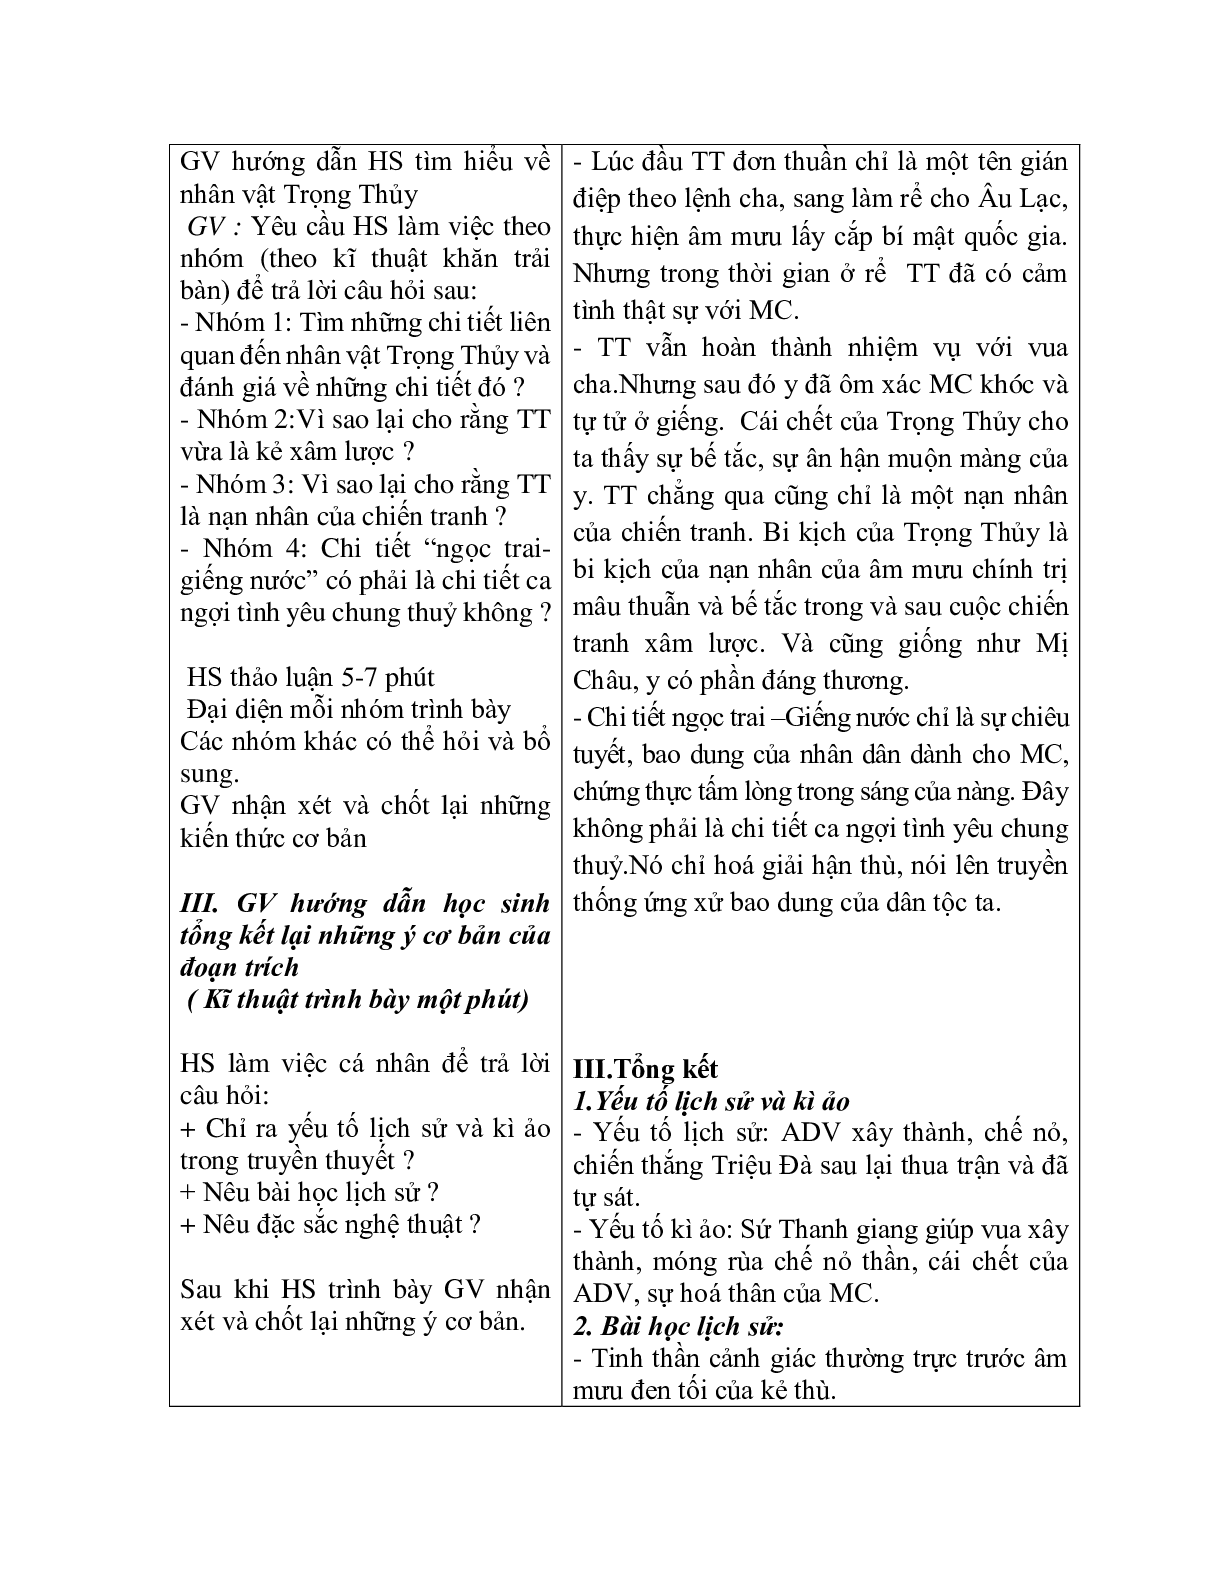 Giáo án ngữ văn lớp 10 Tiết 12, 13: Truyện An Dương Vương và Mị Chậu Trọng Thủy (trang 6)